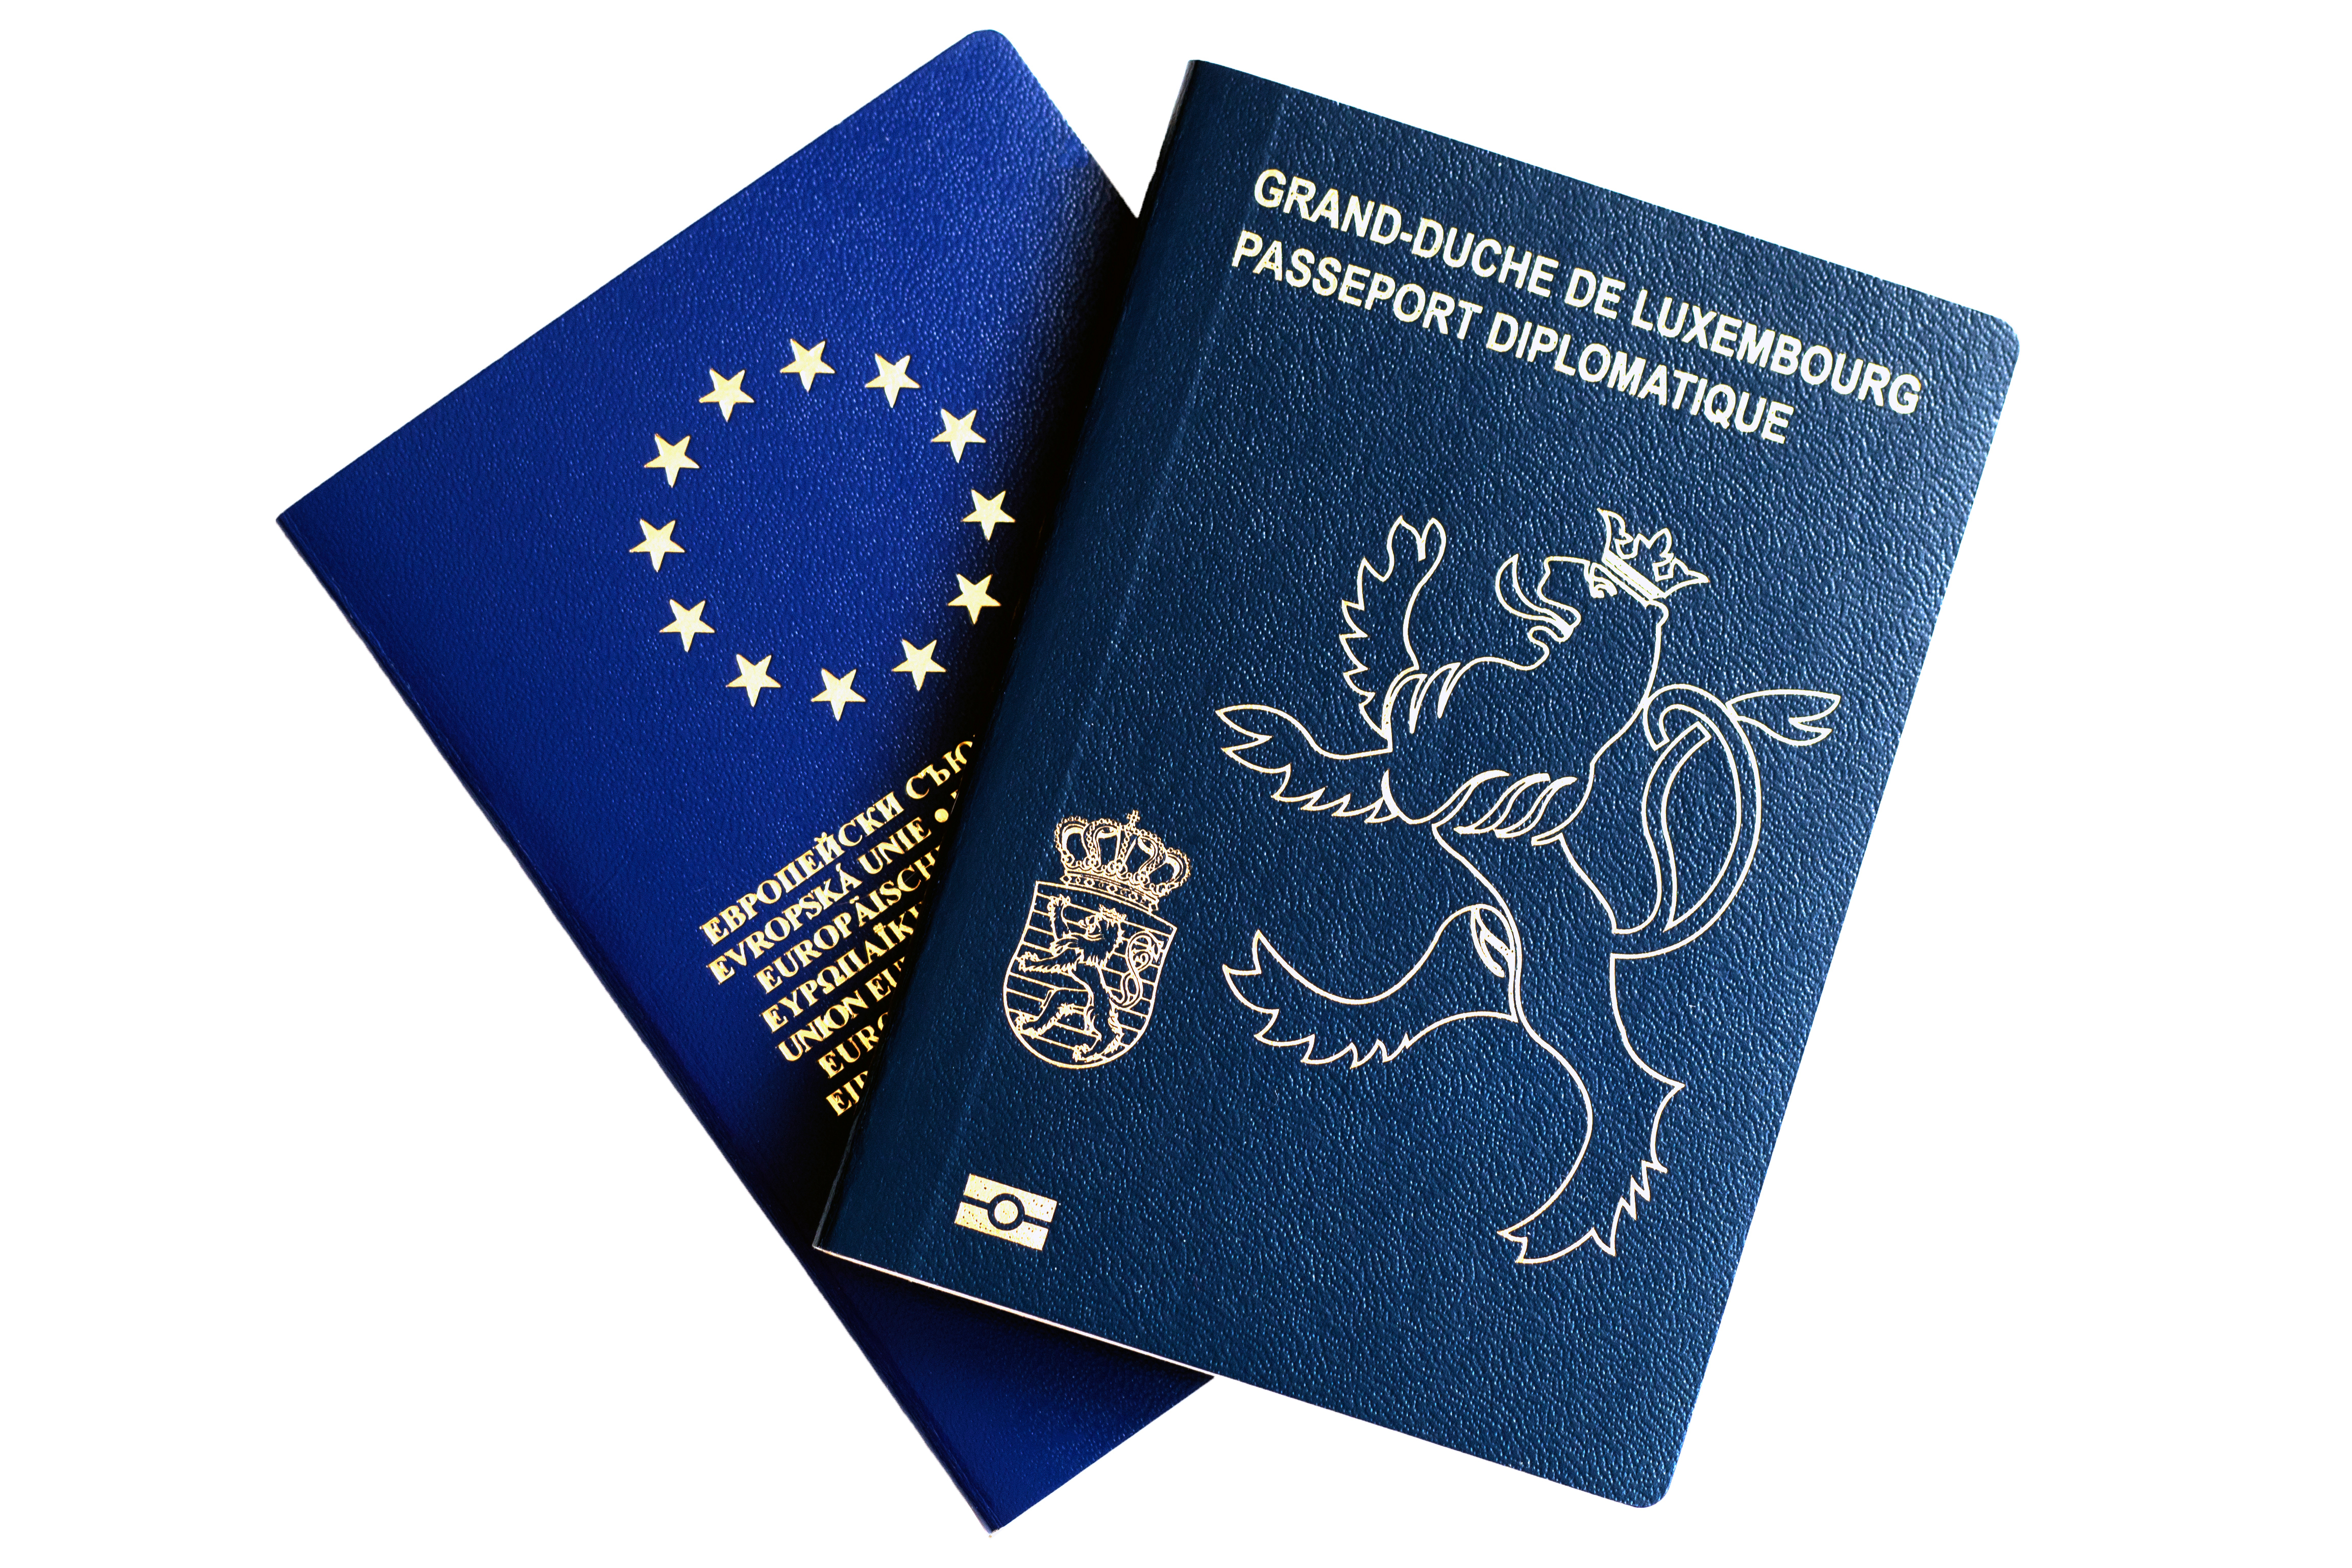 Паспорт Люксембурга, гражданство которого могут получить иностранцы